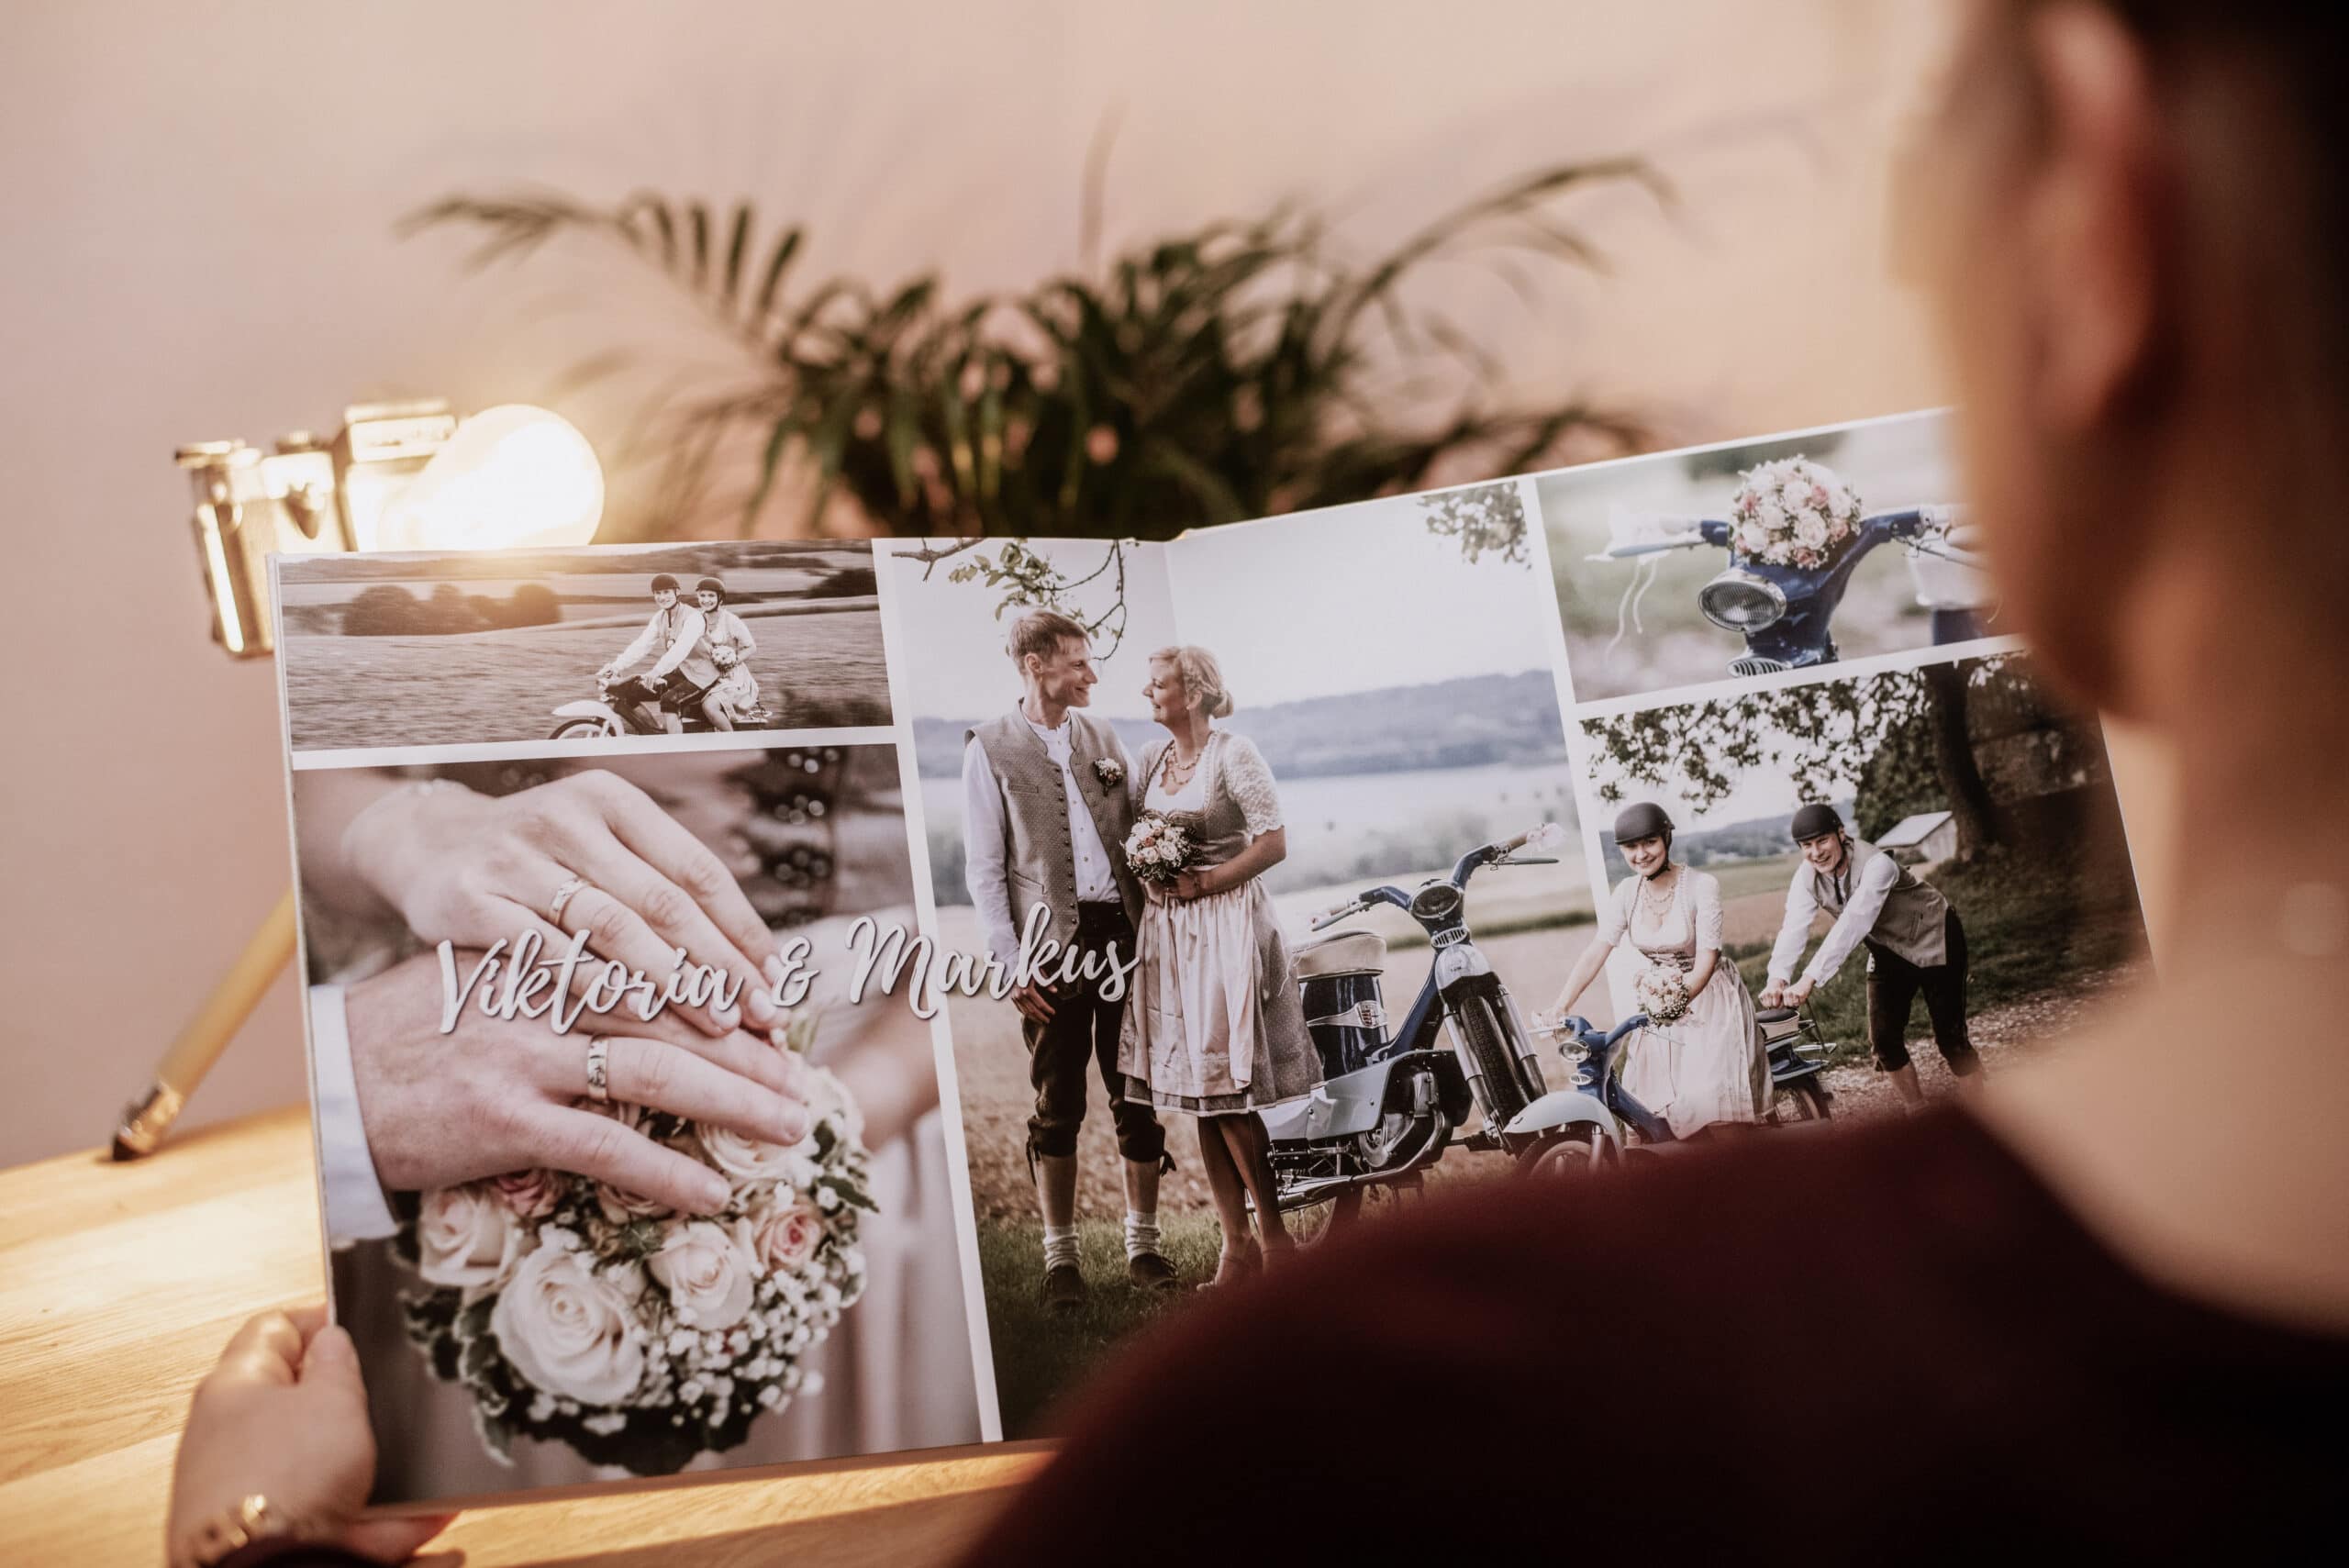 Das Fotobuch von der Hochzeit wird von der Braut betrachtet.